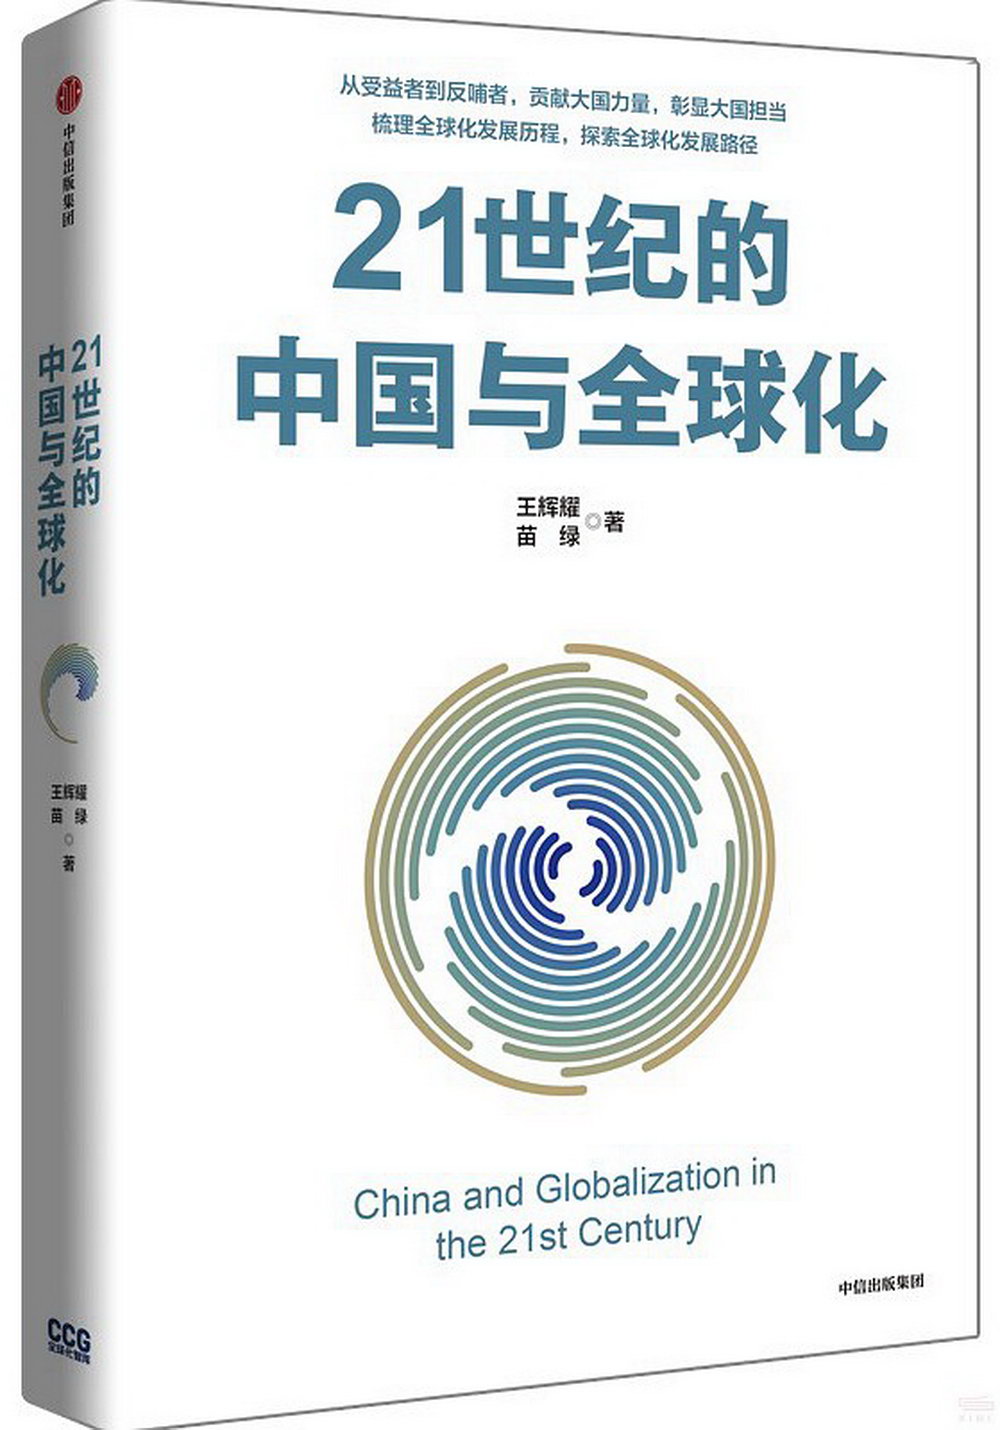 21世紀的中國與全球化